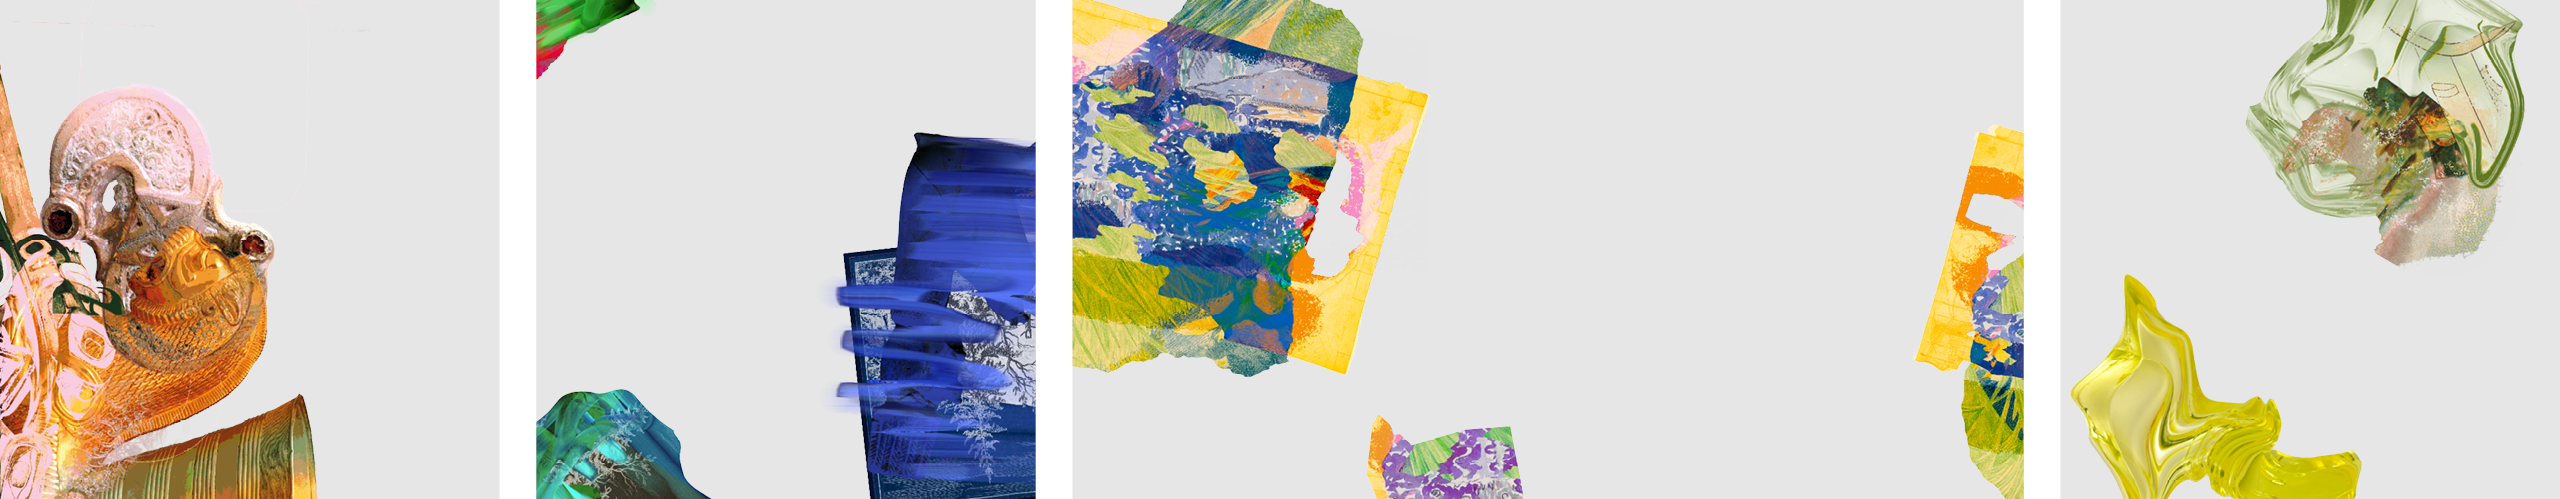 Présentations de plusieurs illustrations du site de Chat Borgne Théâtre. Formes abstraites, aplats de couleurs vives et objets détournés s’entrecroisent.